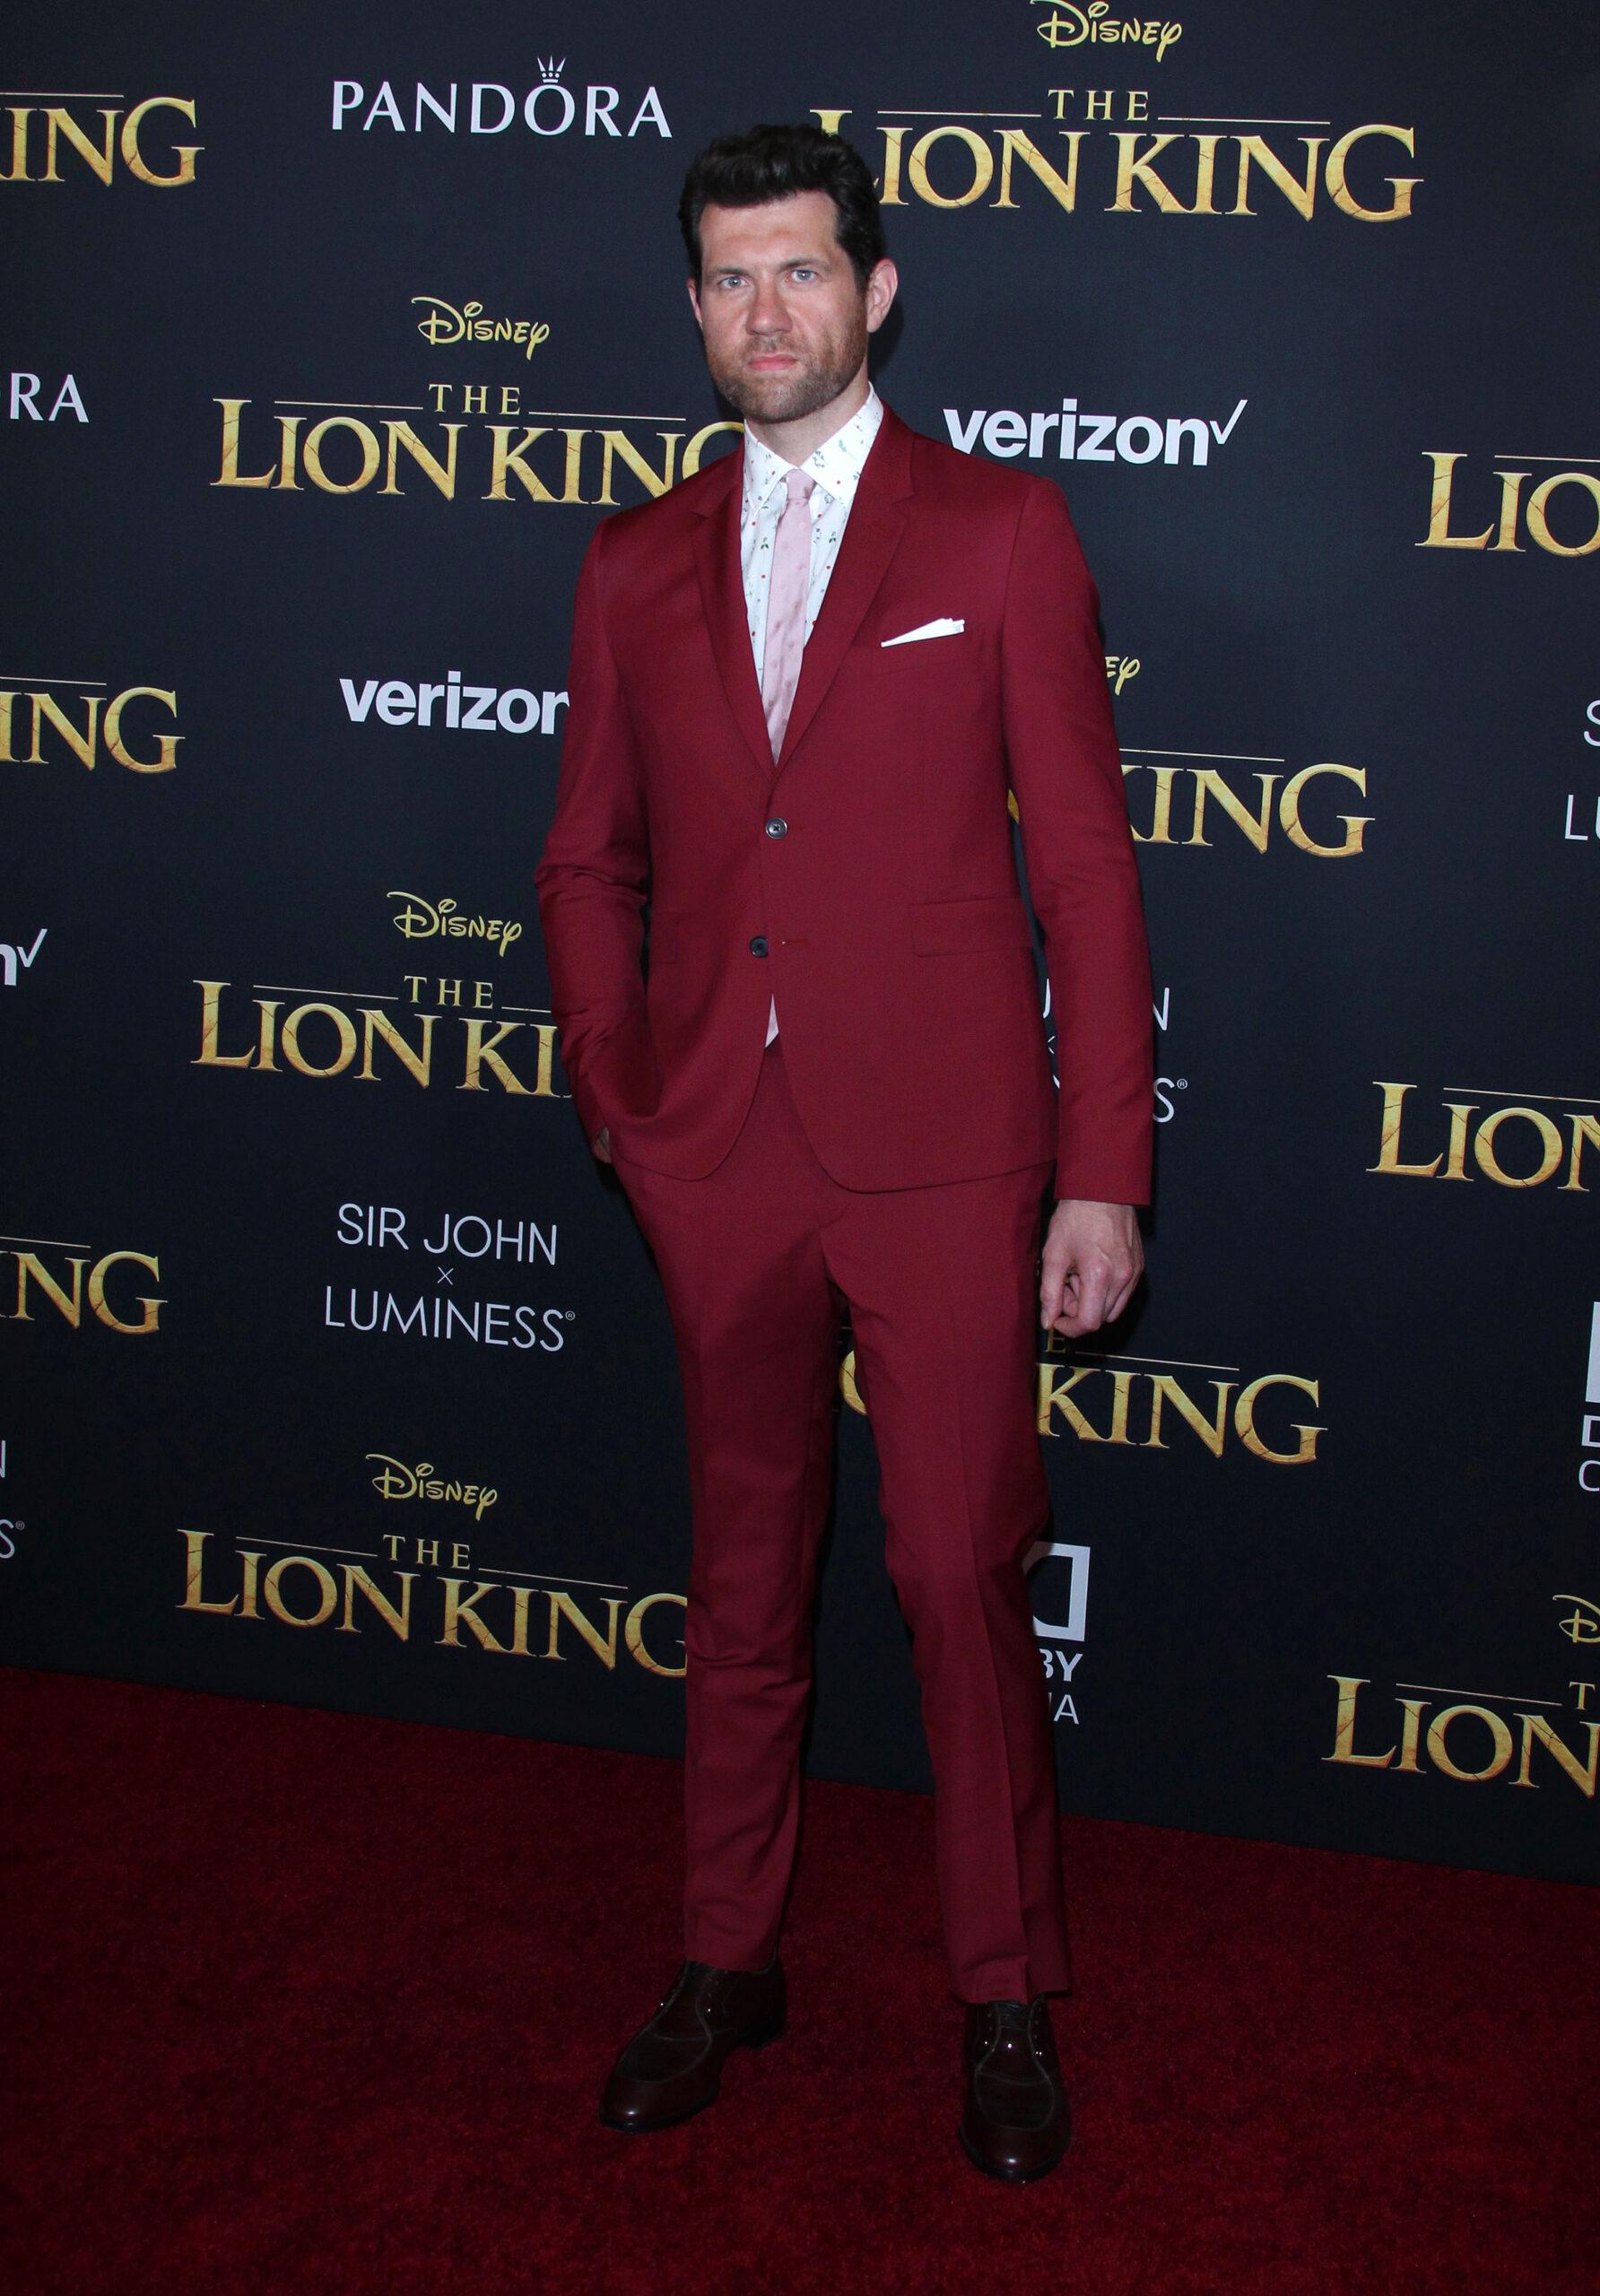 The Lion King Los Angeles Premiere - Arrivals